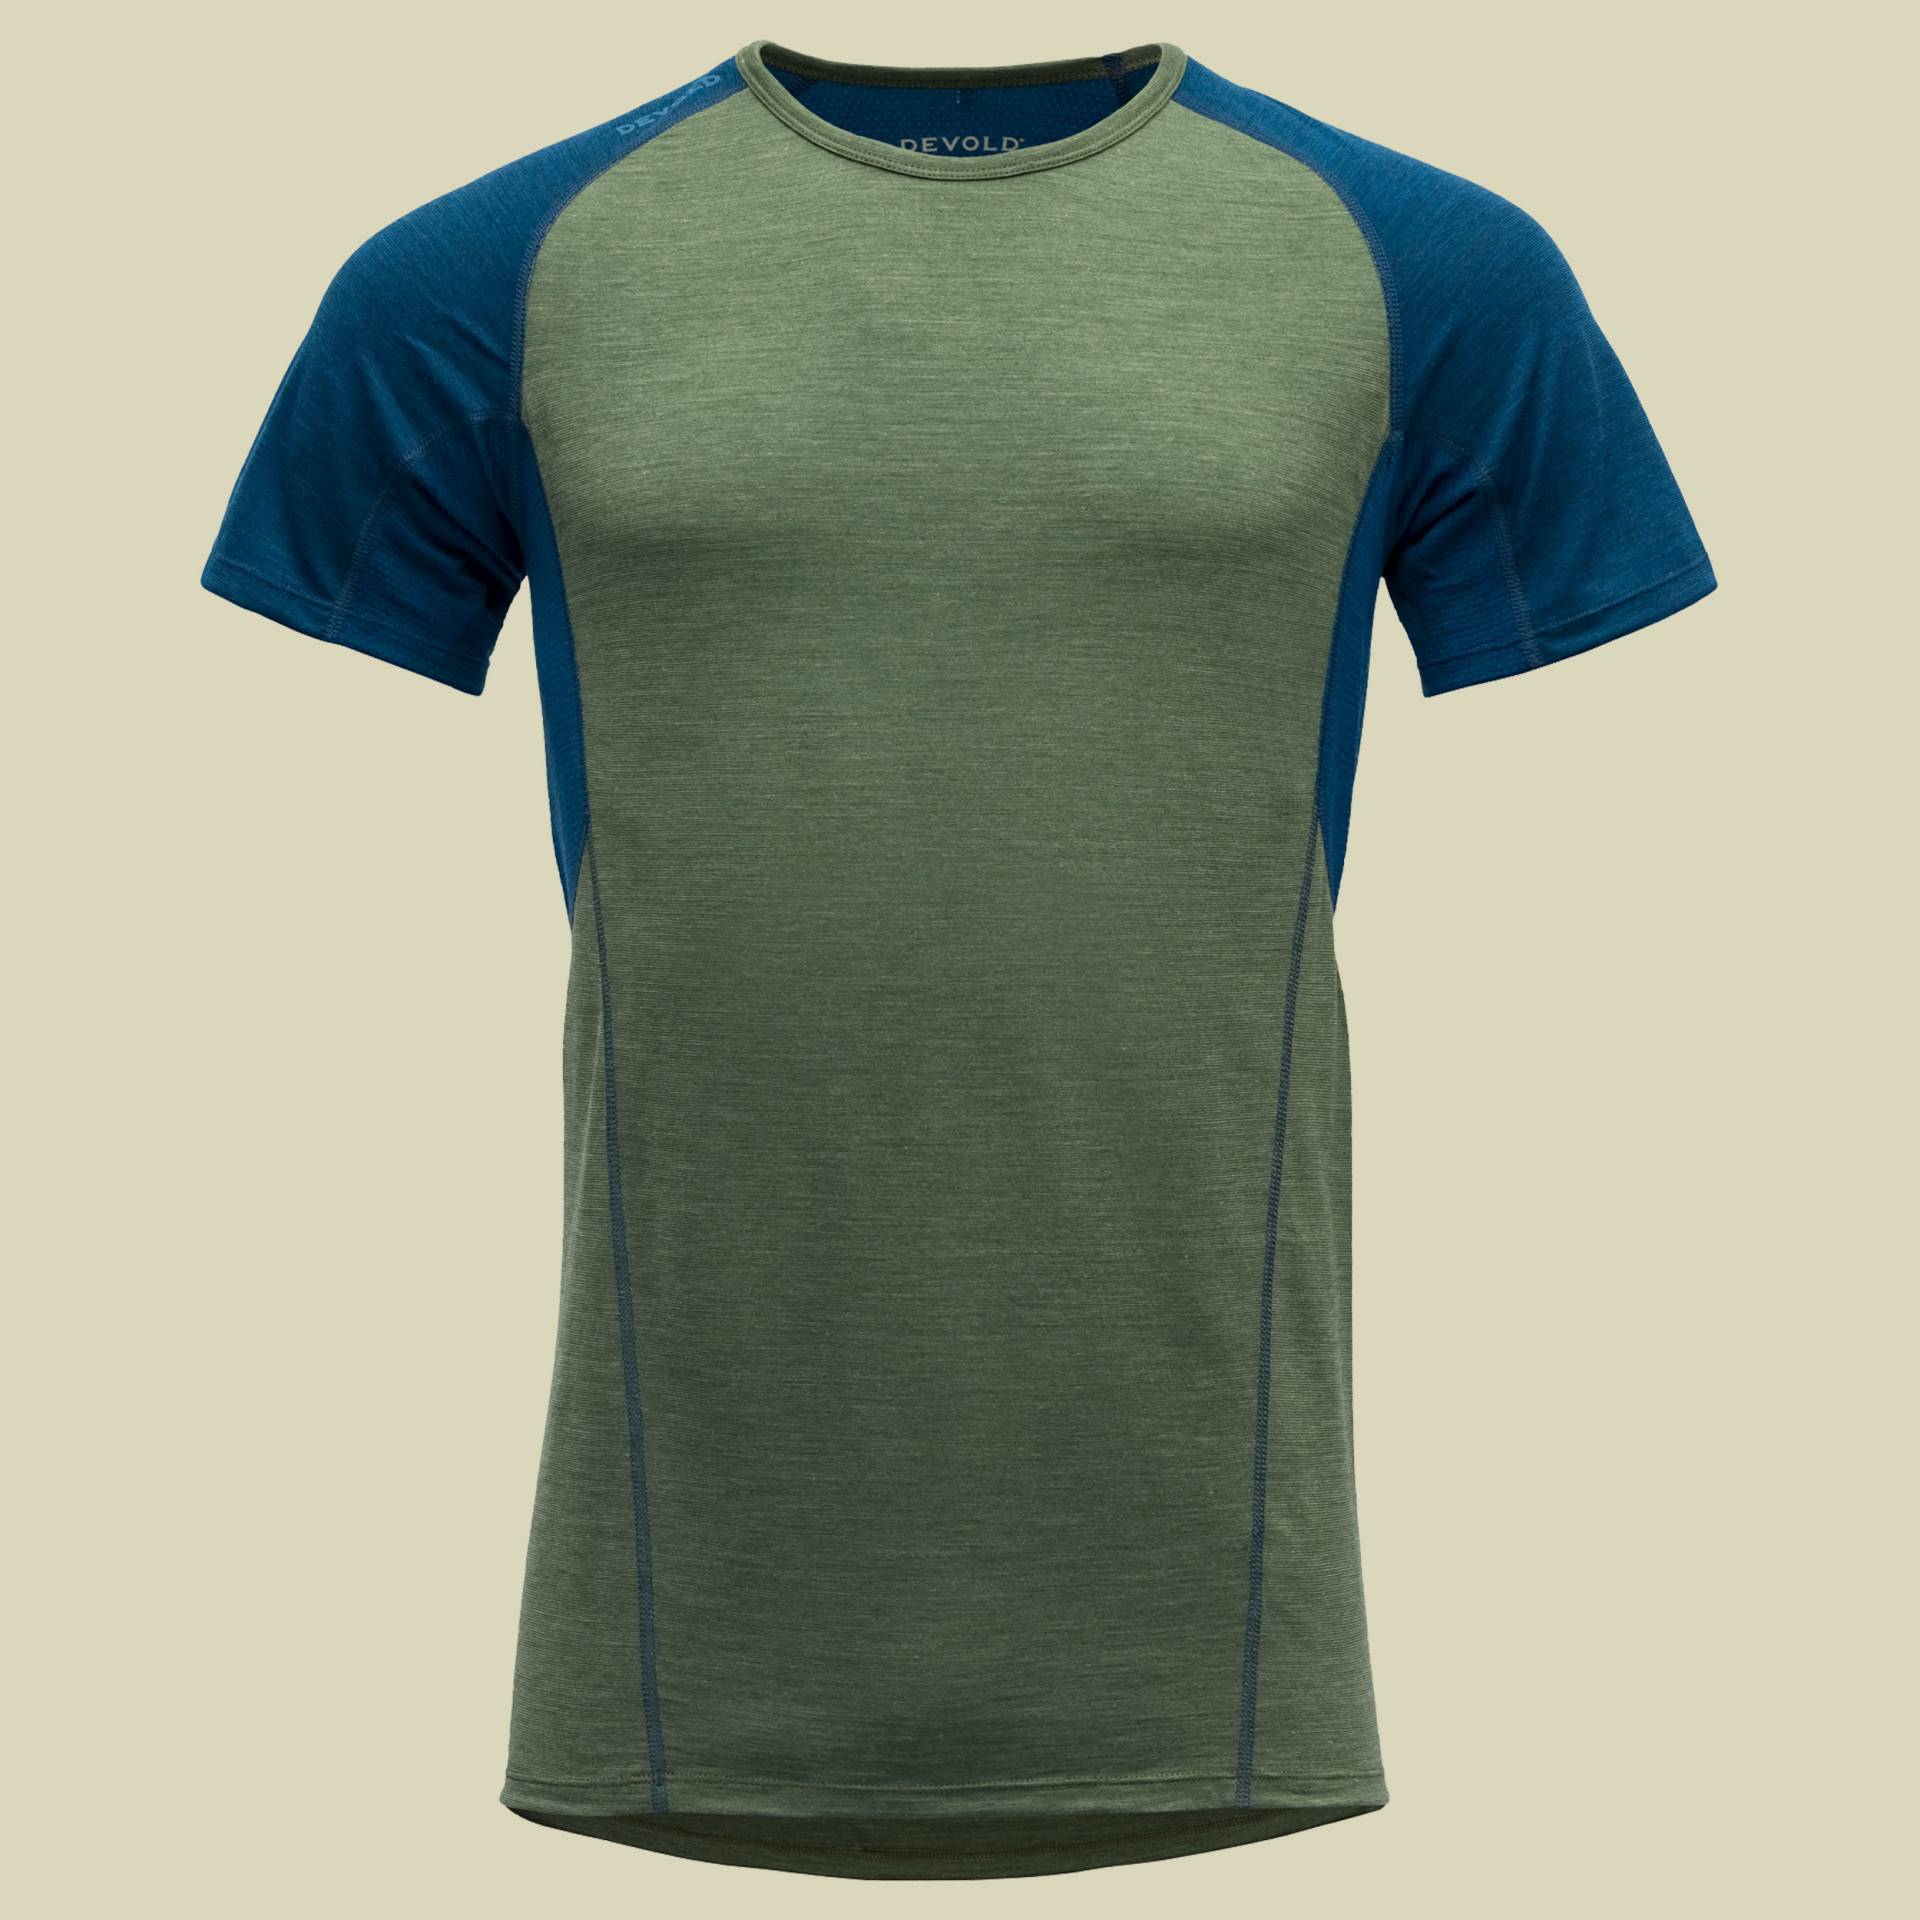 Running Merino 130 T-Shirt Men Größe S Farbe forest von Devold